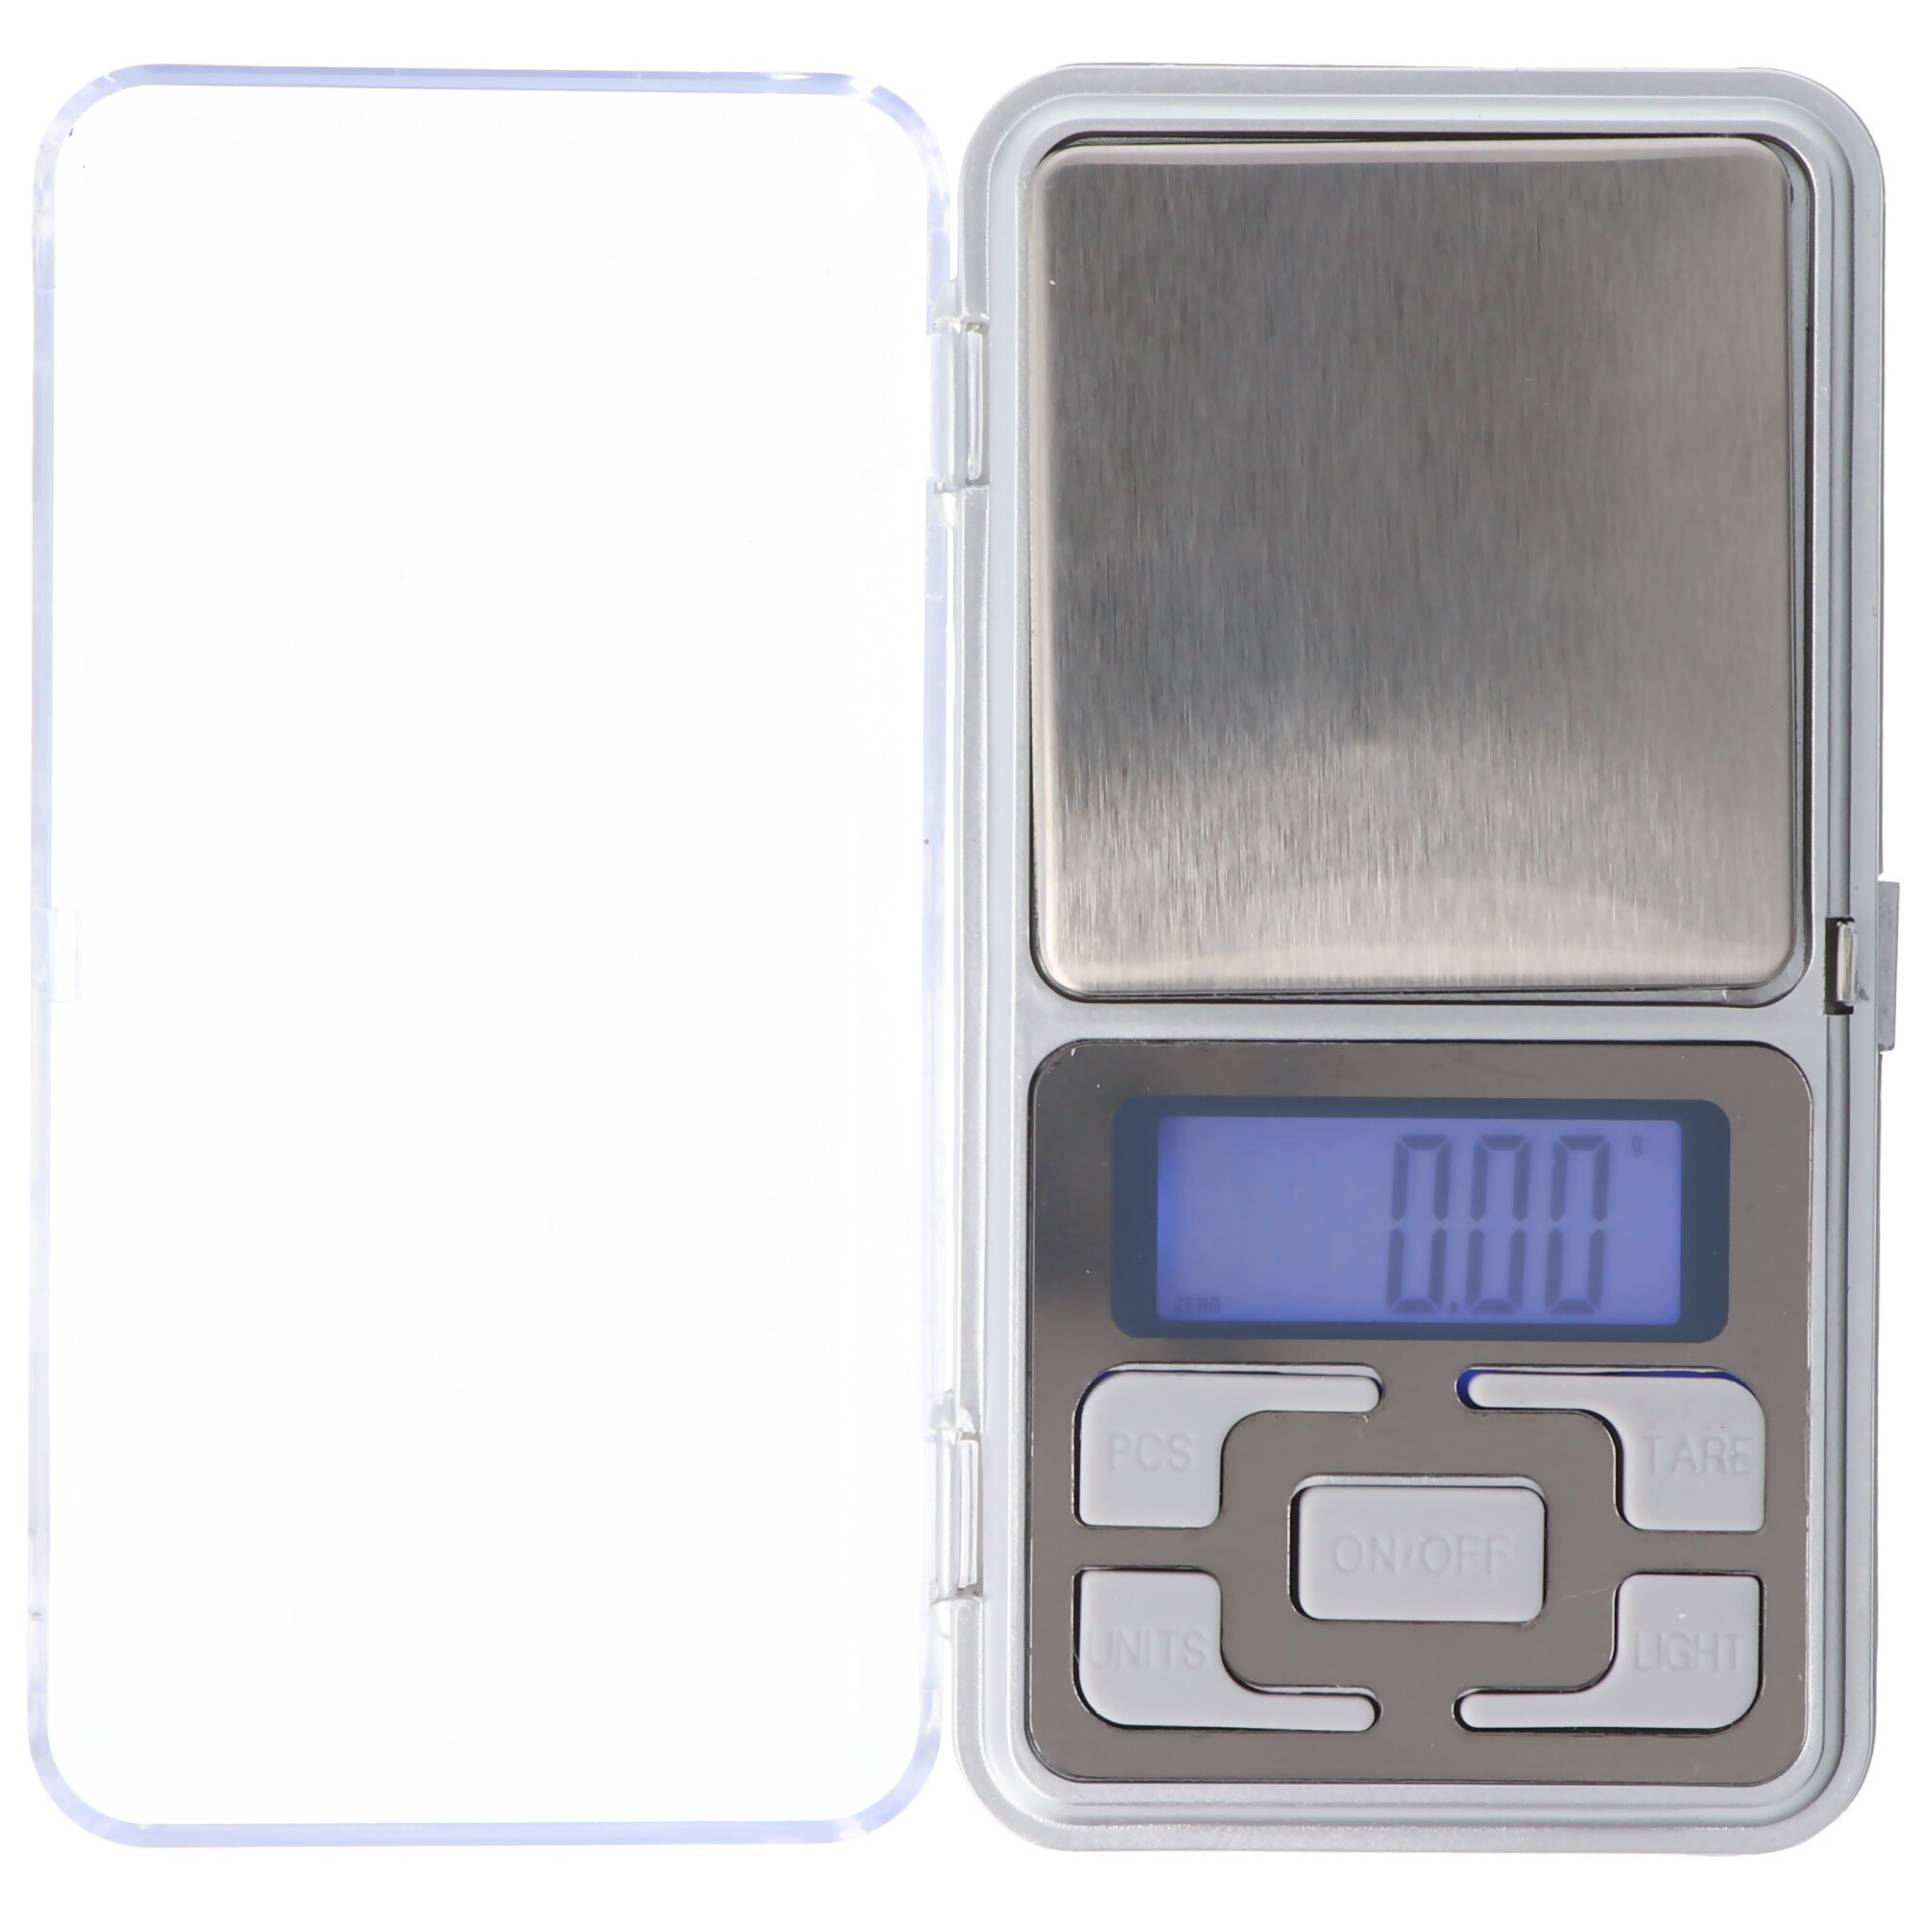 Digital Waage silber grau, mit AAA Batterien von Designa